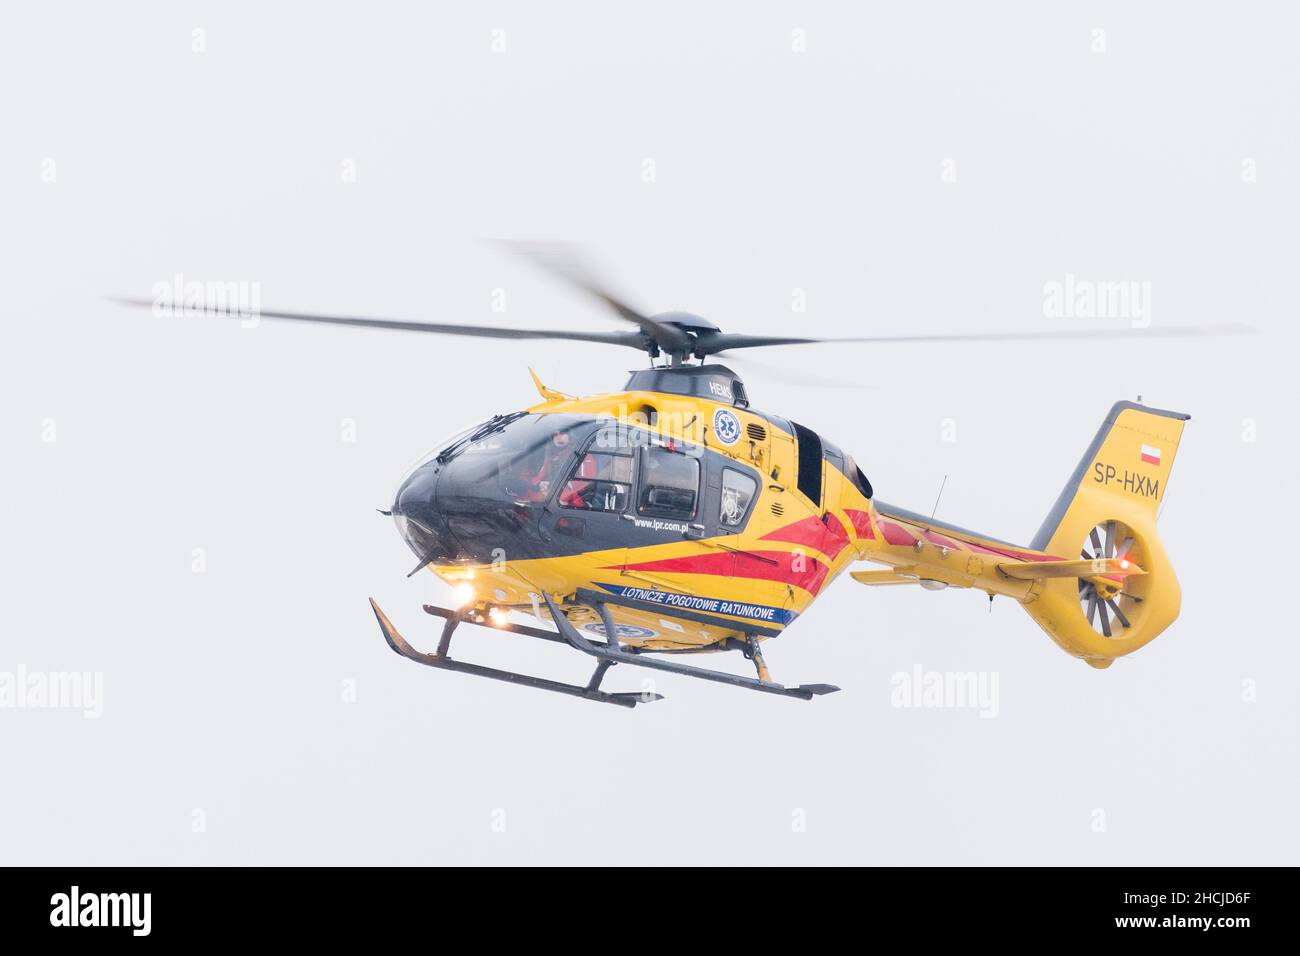 Eurocopter EC 135 elicottero di Lotticze Pogotowie Ratunkowe polacco a Gdansk, Polonia. Dicembre 22nd 2021 © Wojciech Strozyk / Alamy Stock Photo Foto Stock